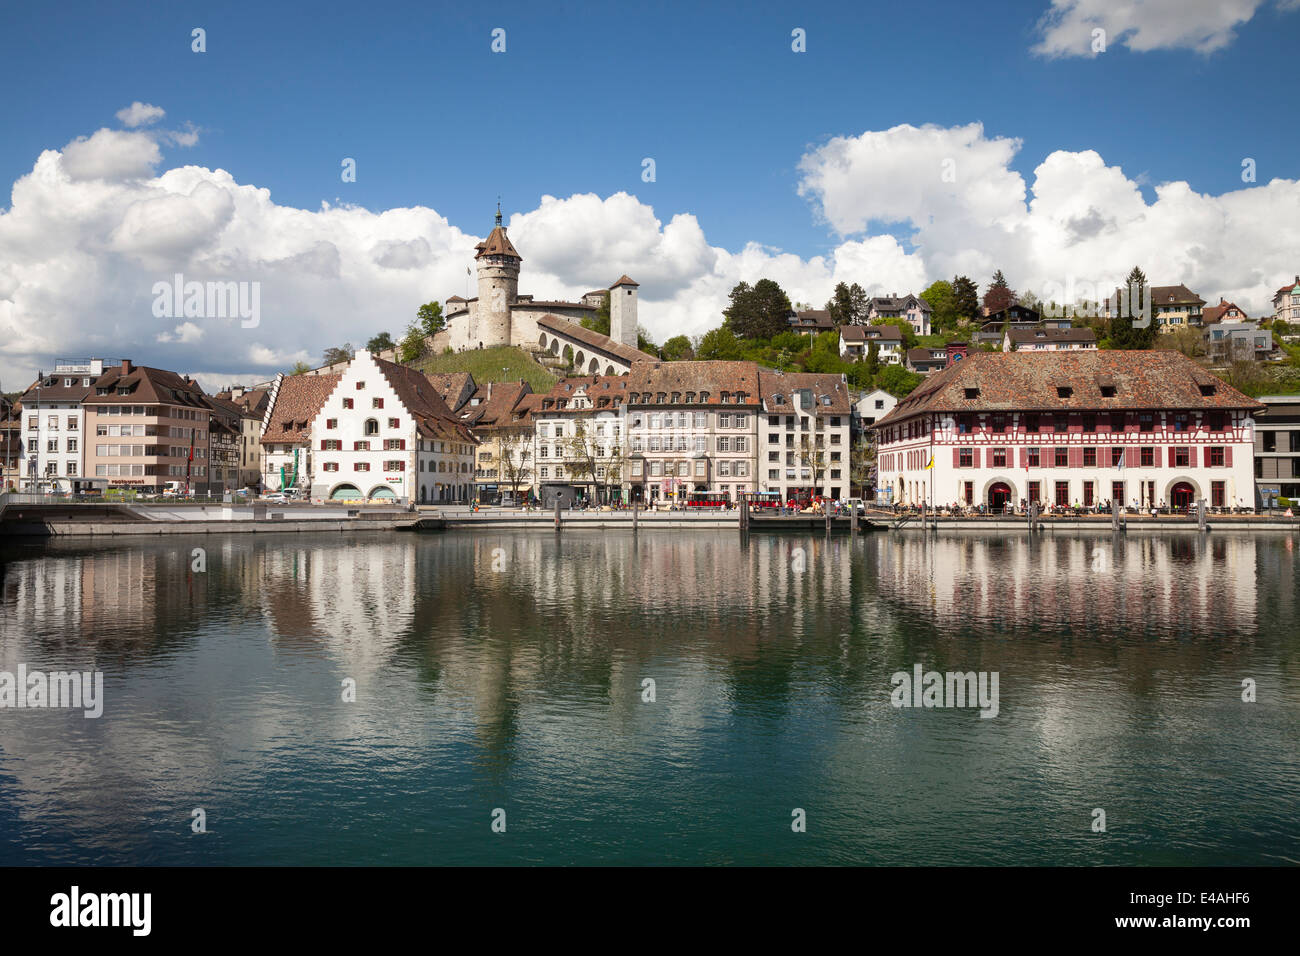 Switzerland, Canton of Schaffhausen, View of Schaffhausen with Munot Castle, High Rhine river Stock Photo